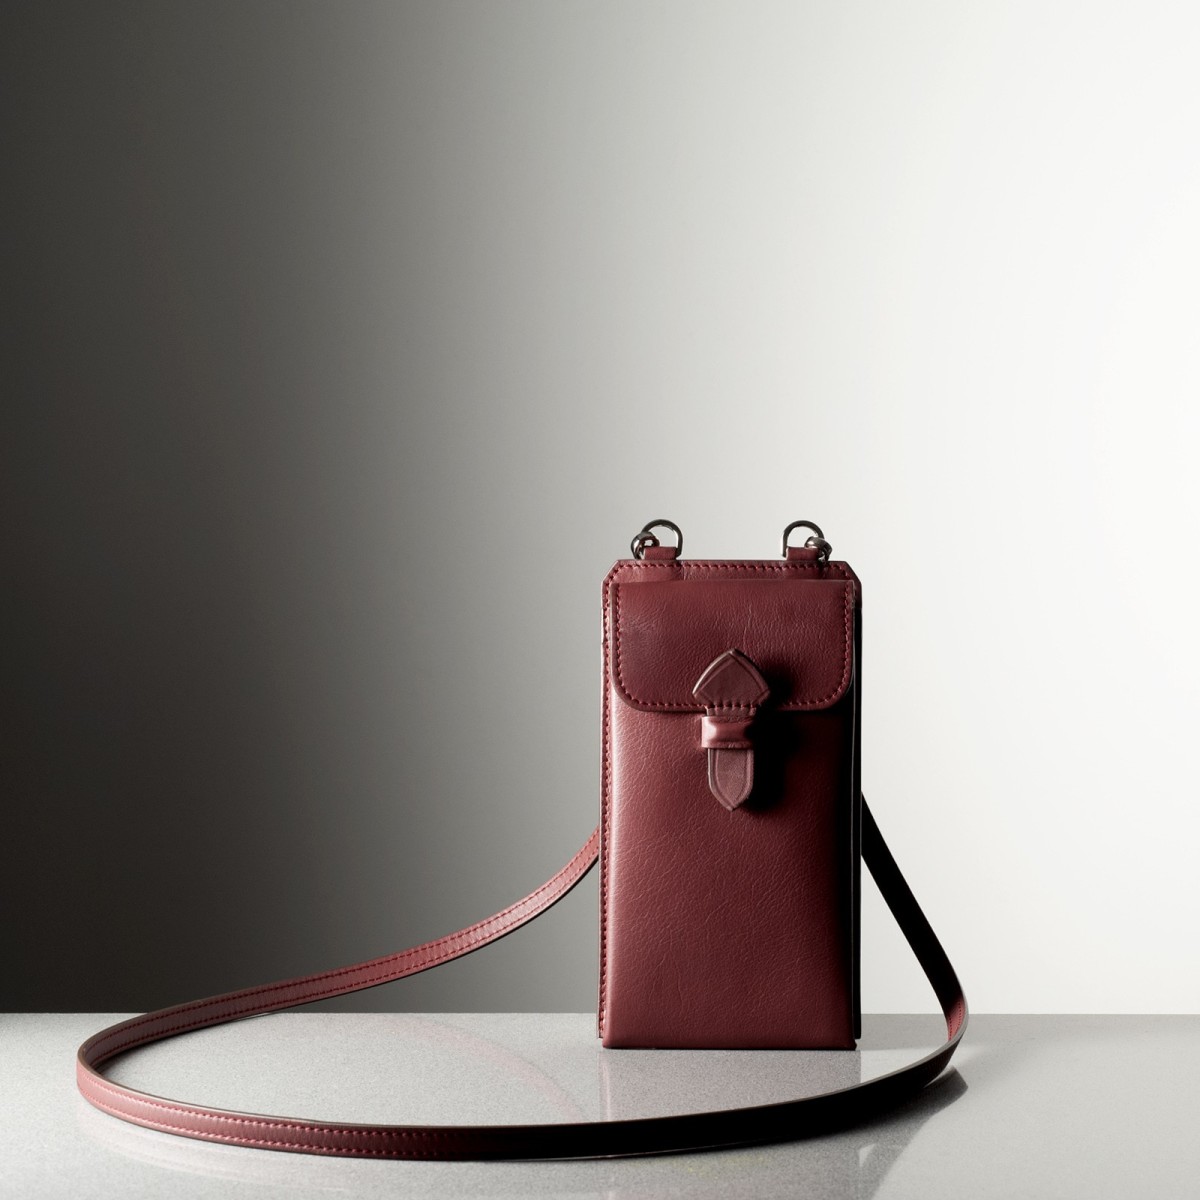 LEONARDO PM - porte téléphone en cuir fabriqué à la main en Italie